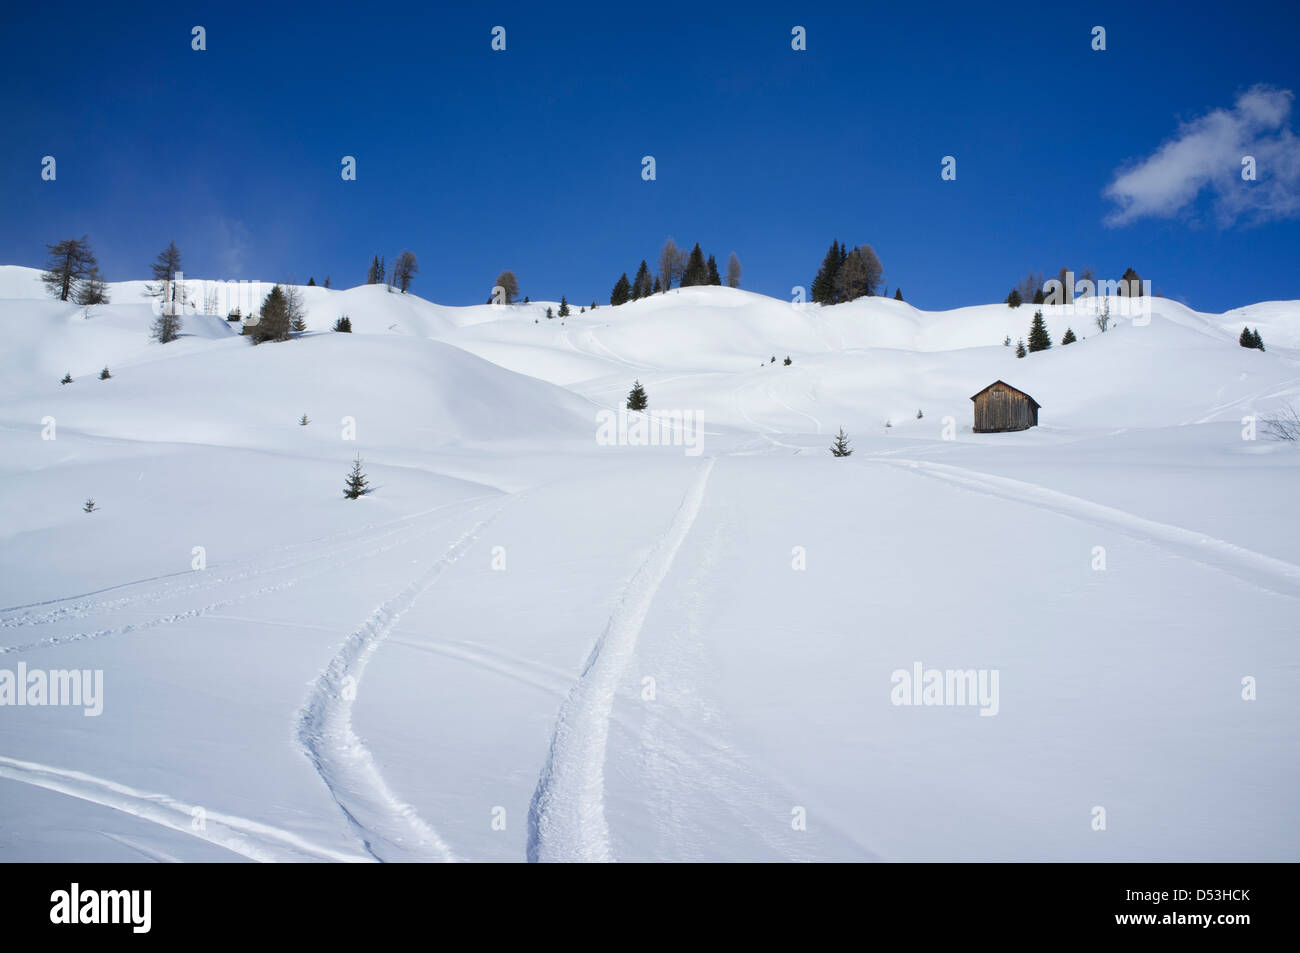 La neige fraîche à la station de ski Alta Badia, dans les Dolomites, le Tyrol du Sud, Italie Banque D'Images